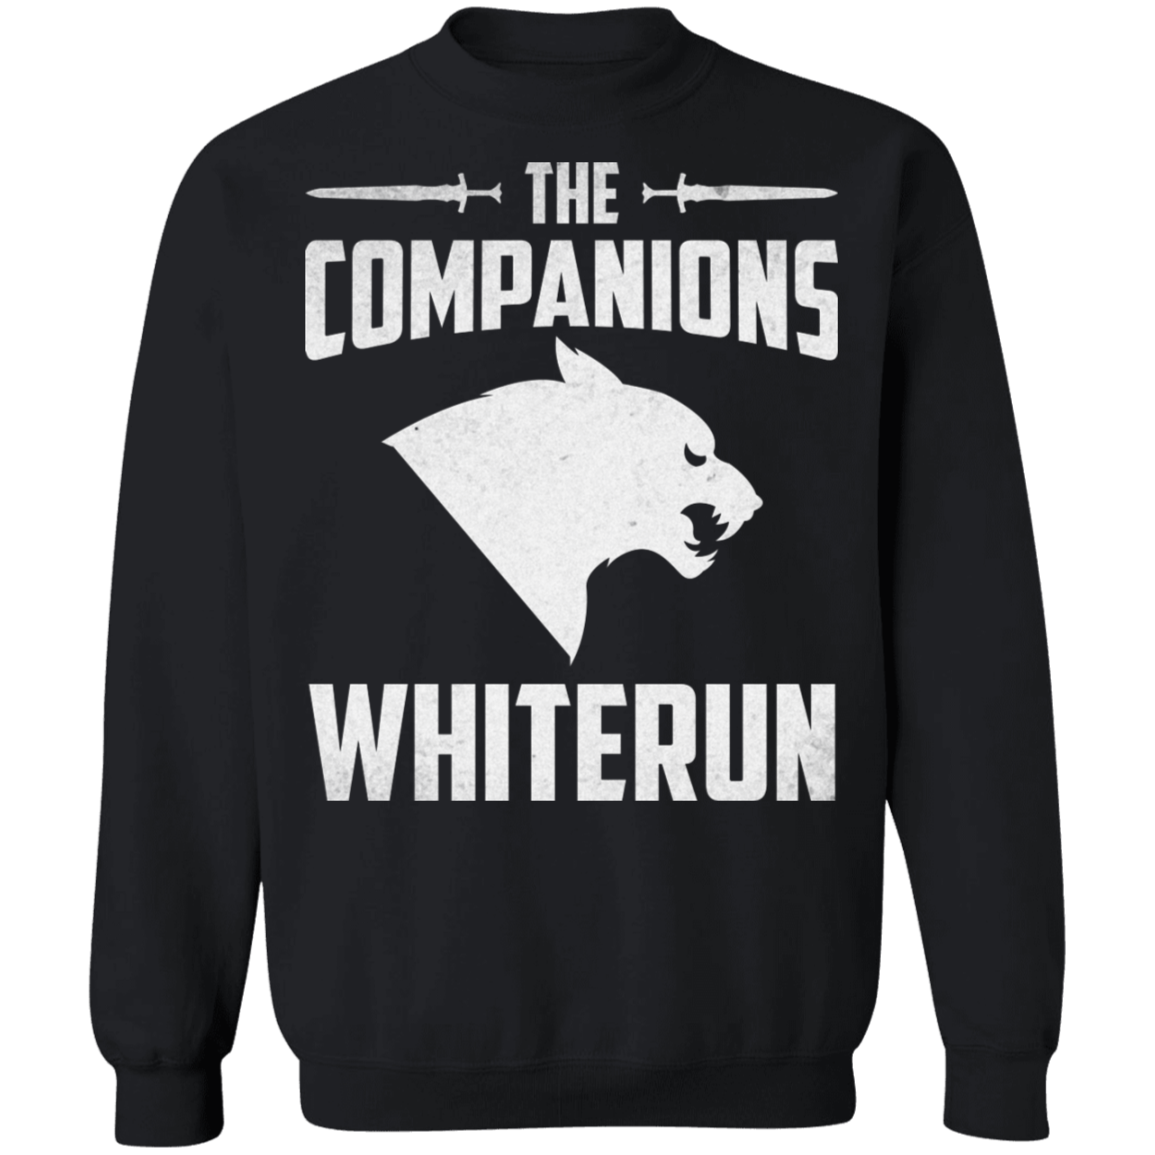 The Companions Whiterun 2 Sweatshirt